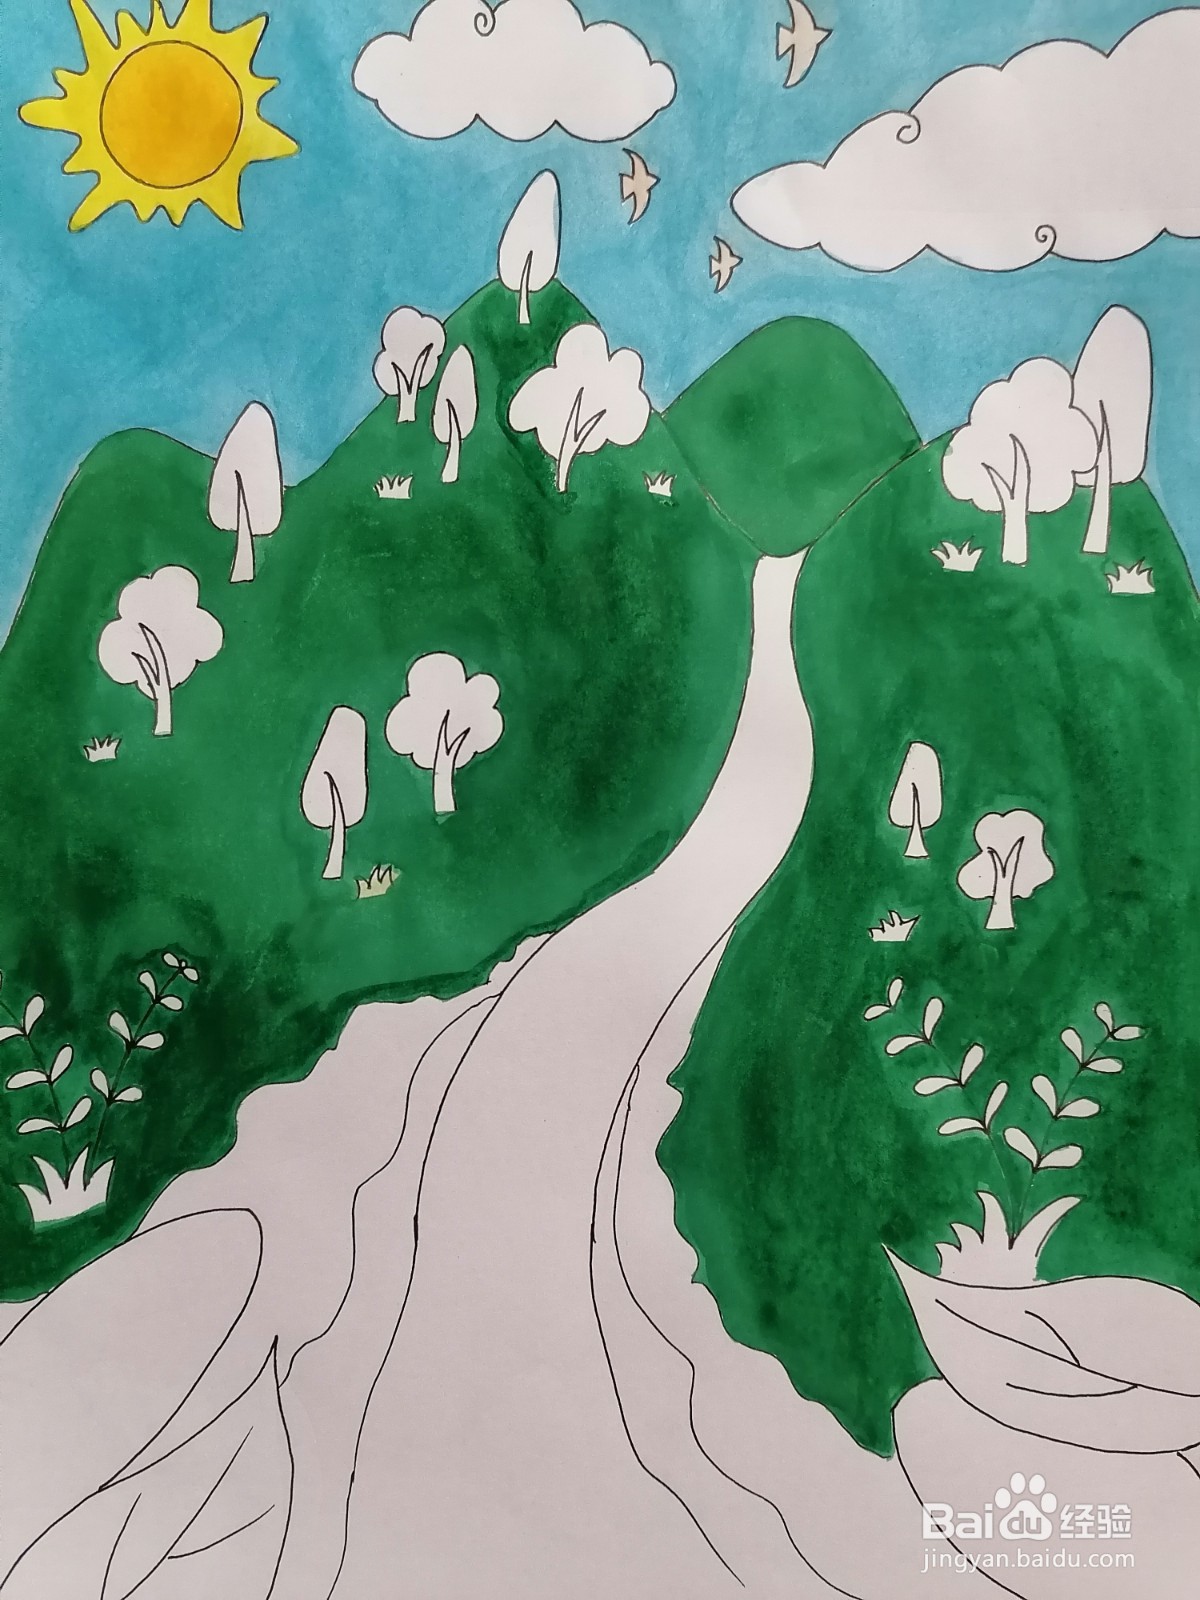 祖国的绿水青山手绘画图片